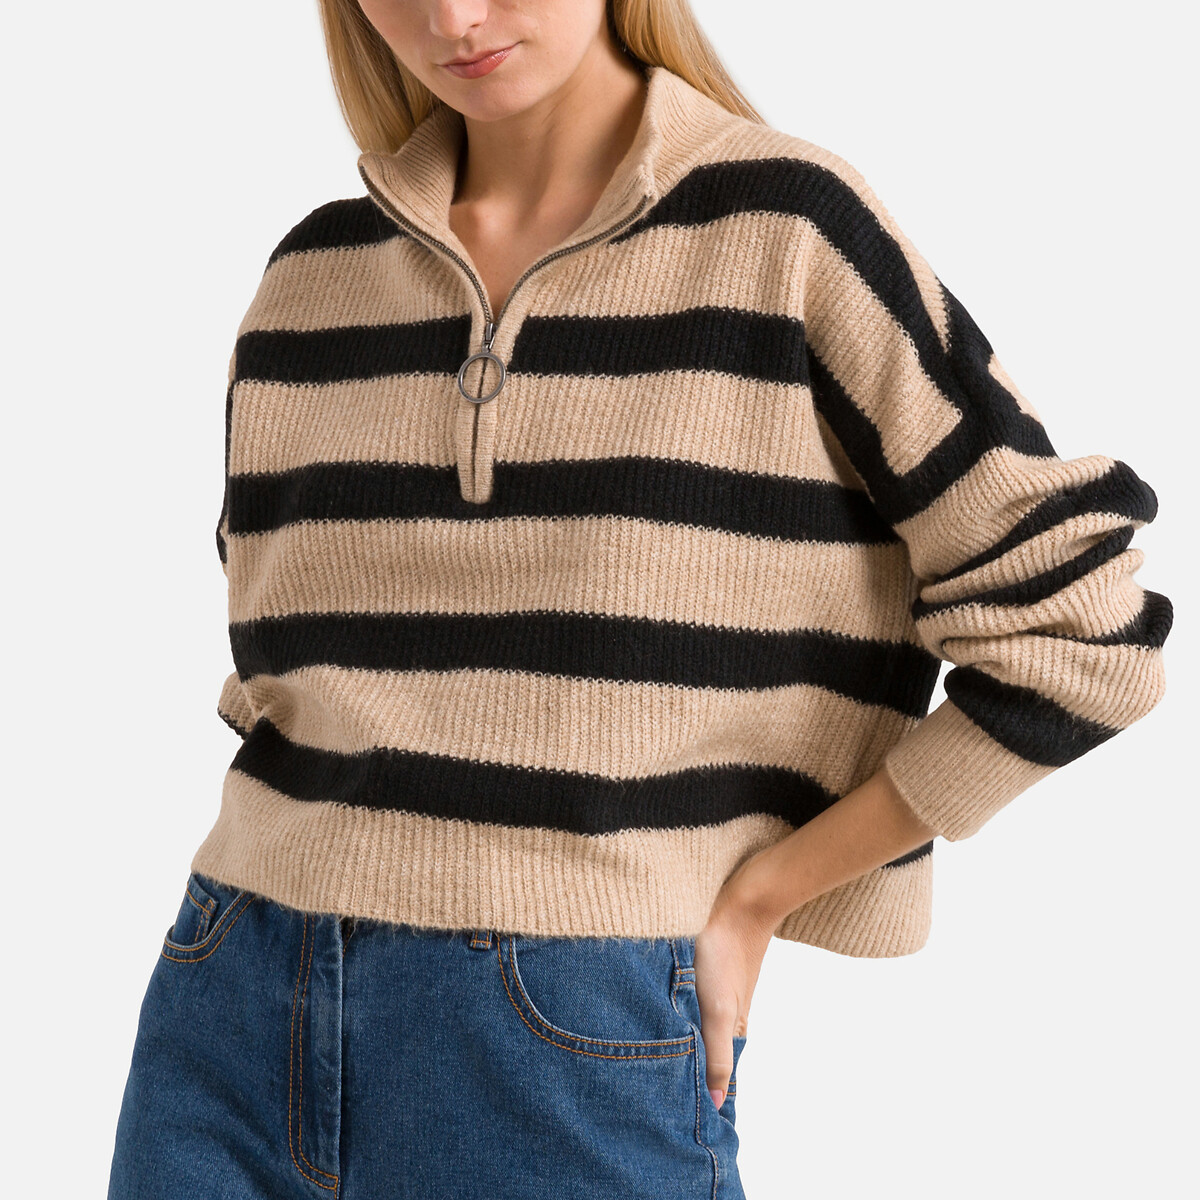 Пуловер с воротником-стойкой из объемного трикотажа M черный пуловер с длинным воротником из плетеного трикотажа l синий